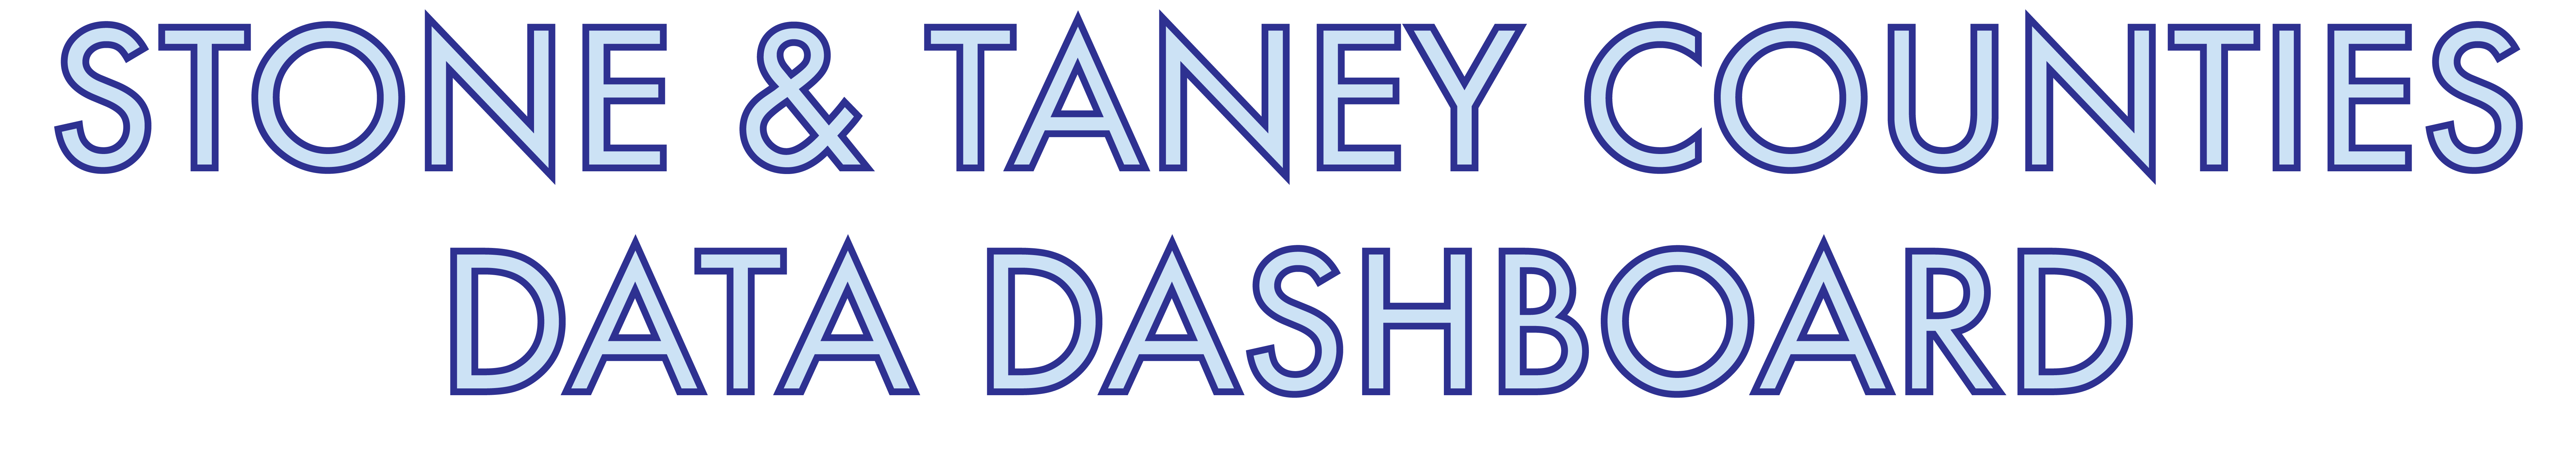 Stone & Taney County Data Dashboard